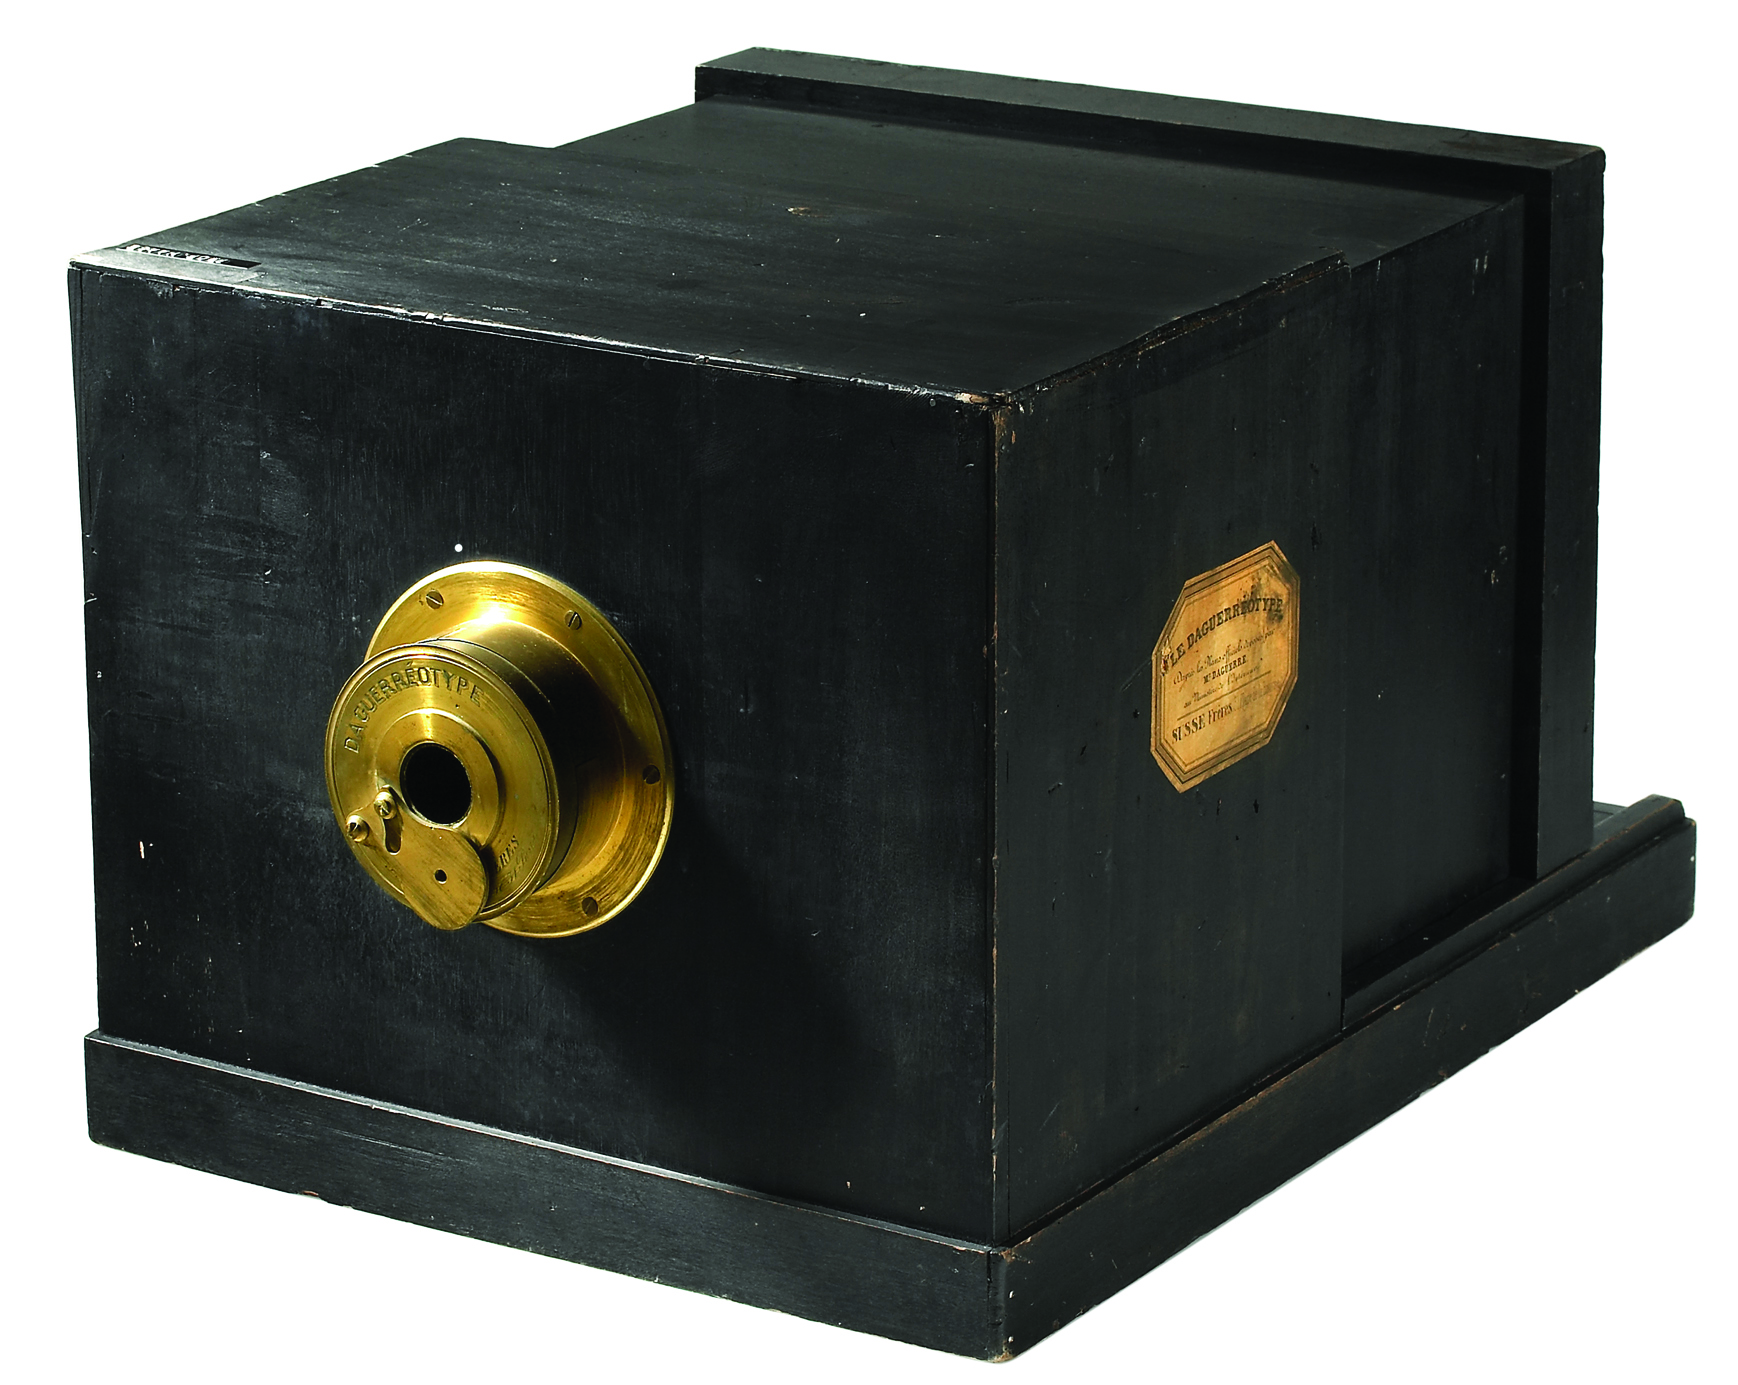 Réplica perfeita de uma câmera Daguerre, feita a partir de uma caixa de madeira com um orifício metálico